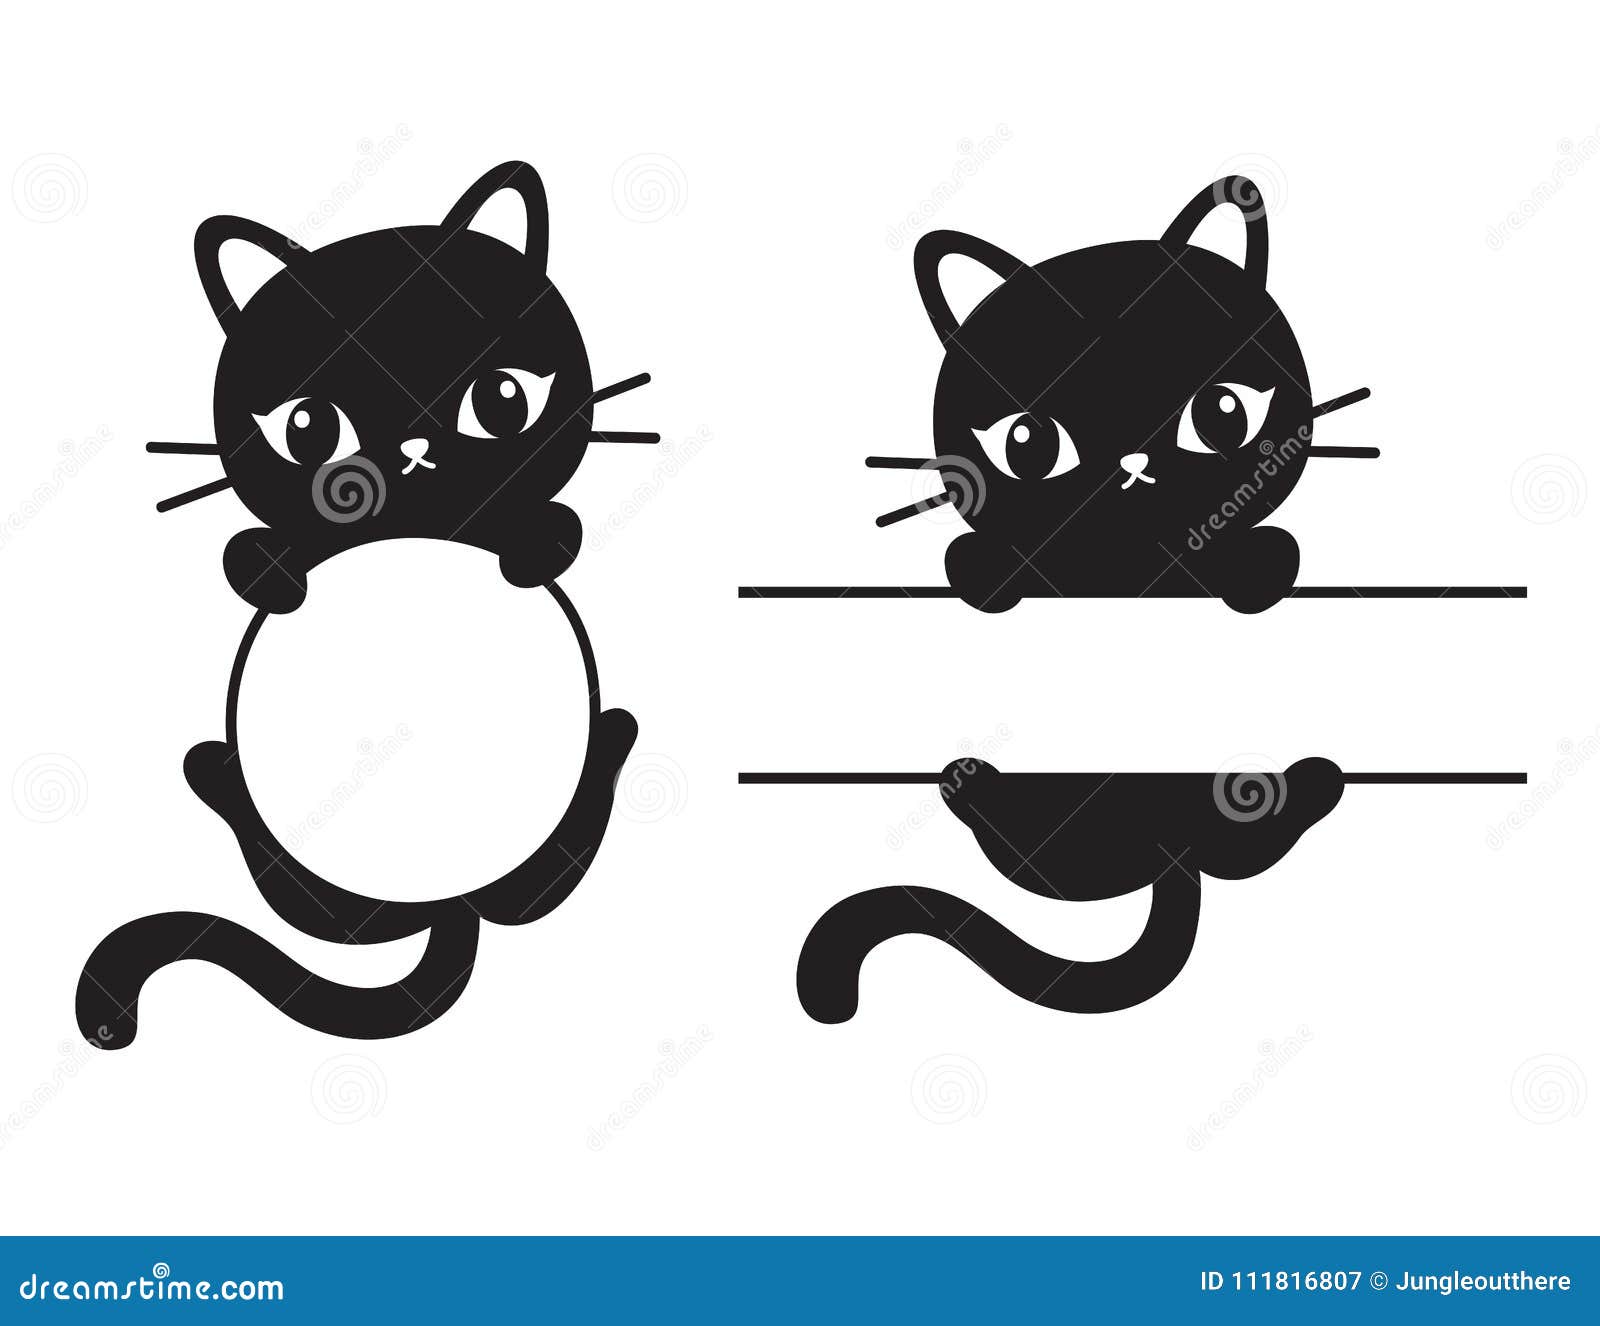 Cute Black Cat Frame Vector Illustration Stock Vector Illustration Of Rectangular Banner 111816807